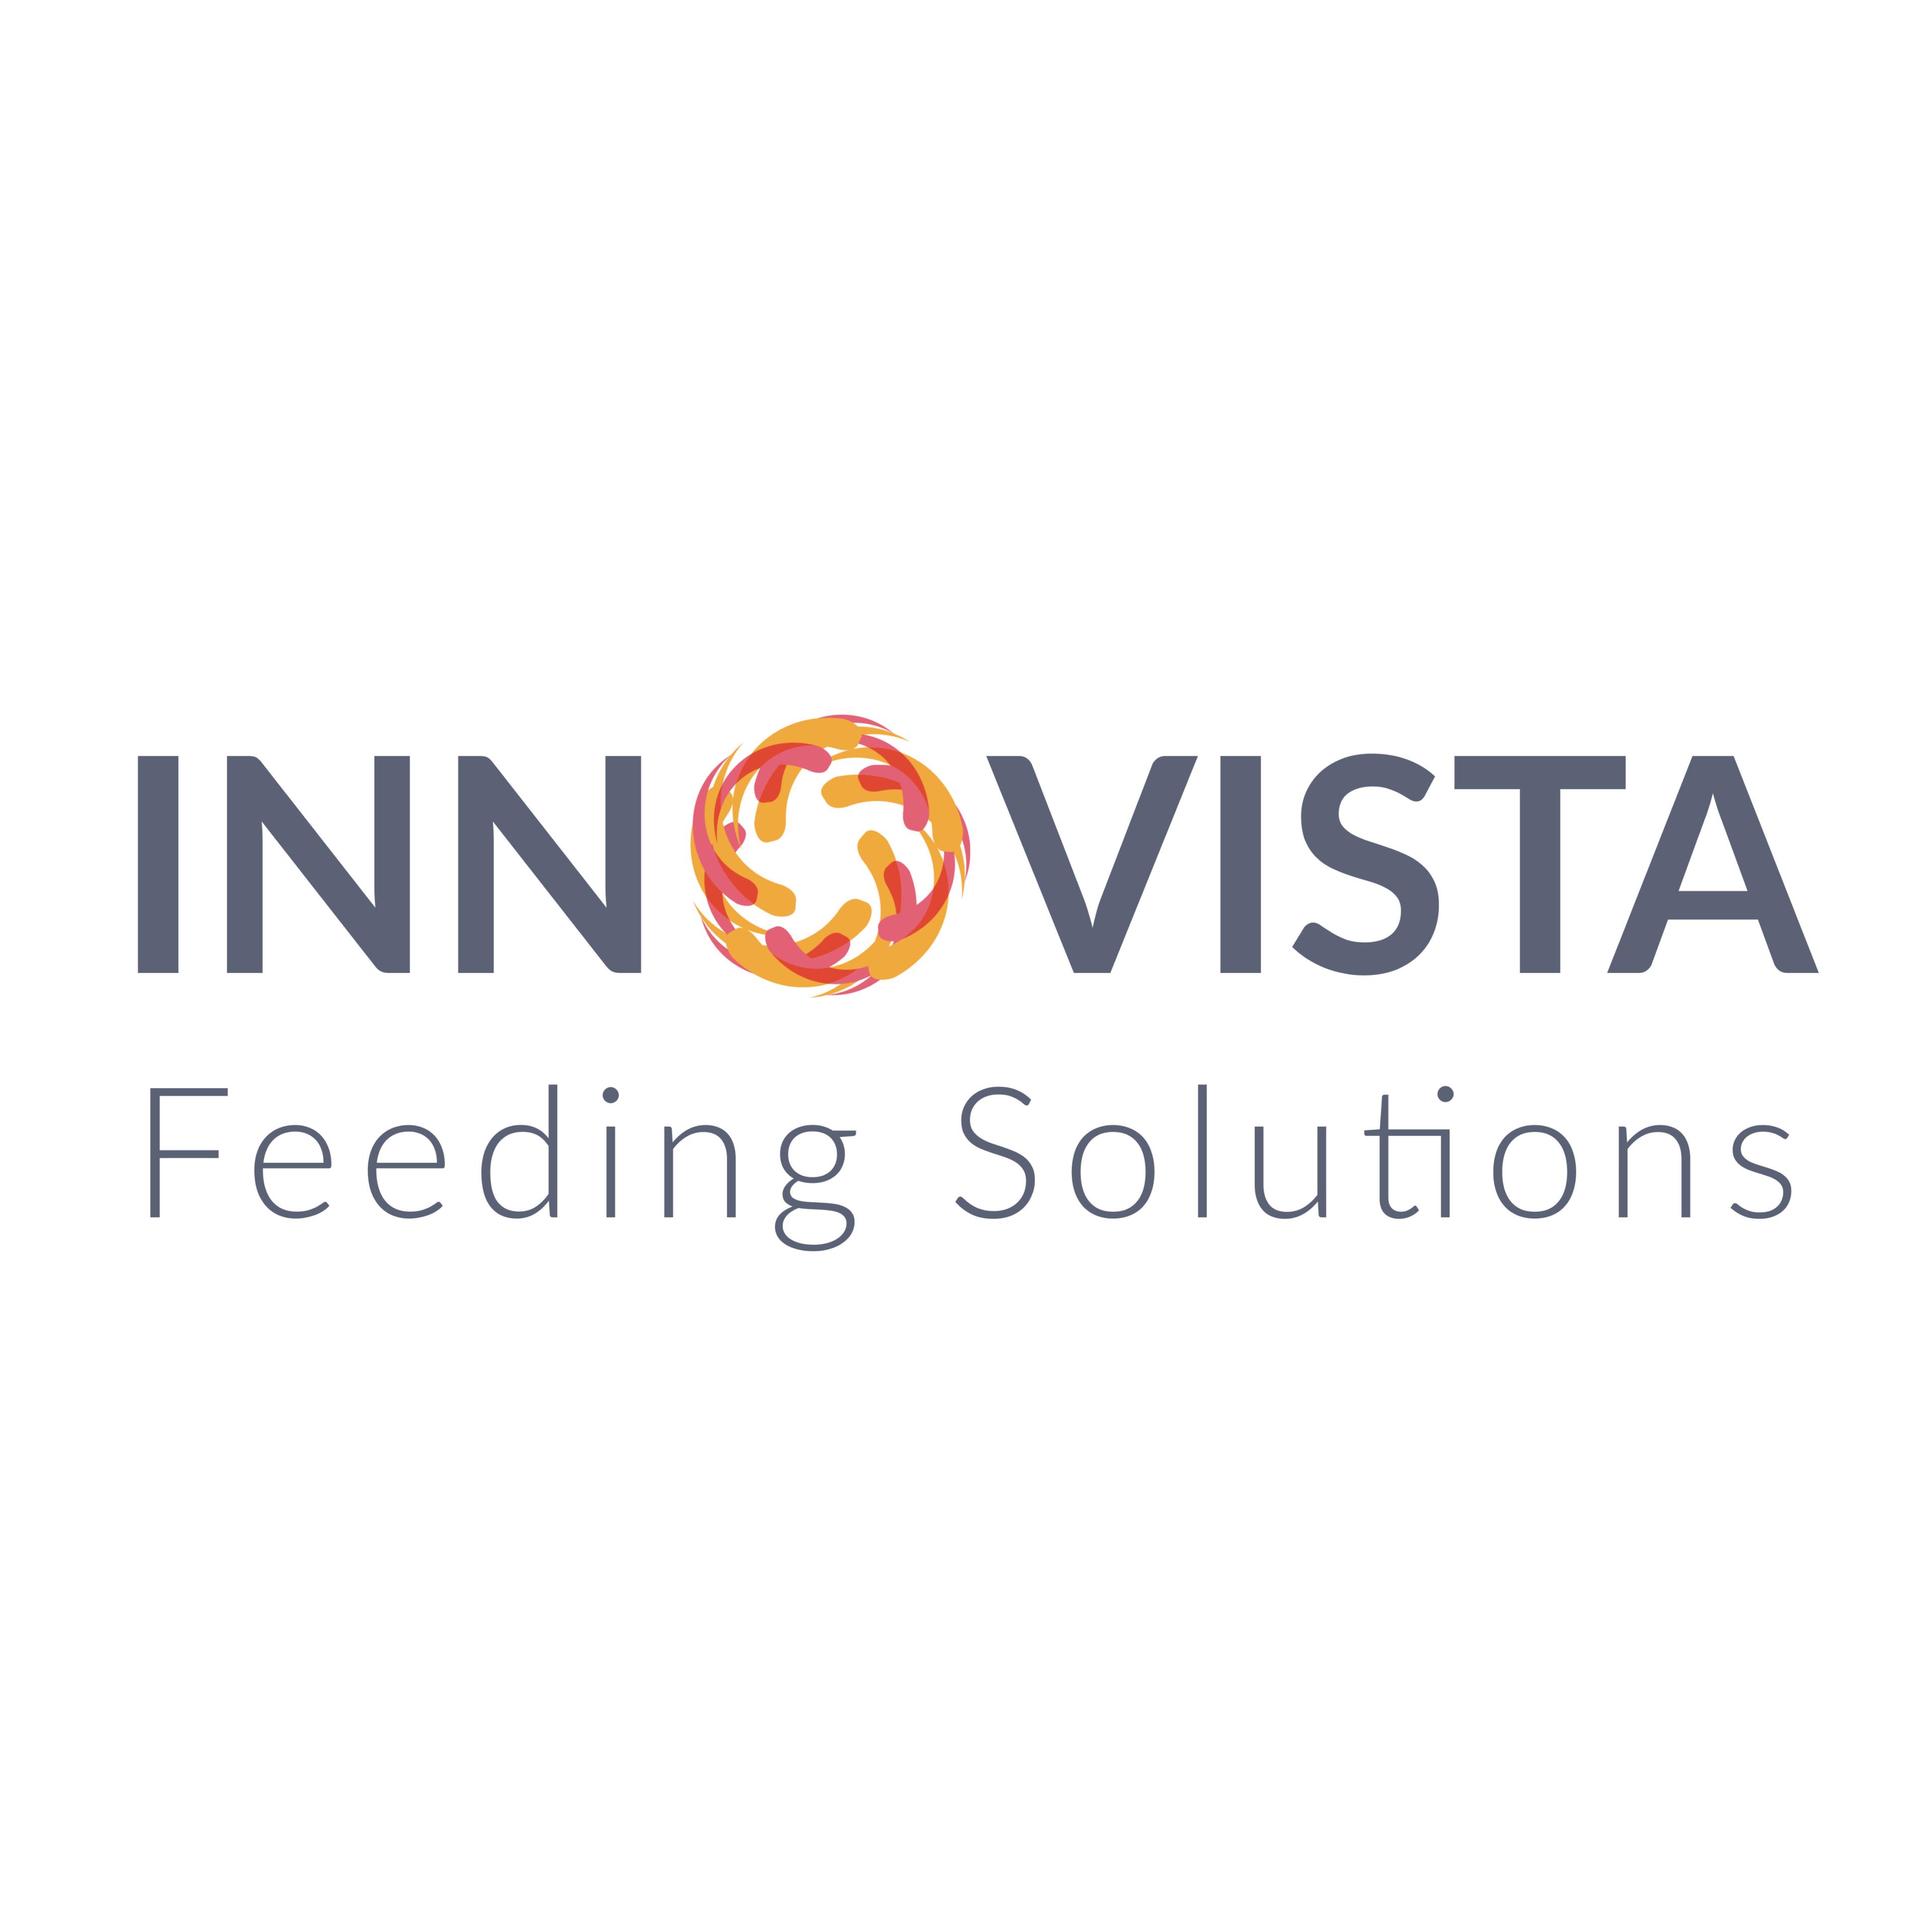 Innovista Feeding Solutions